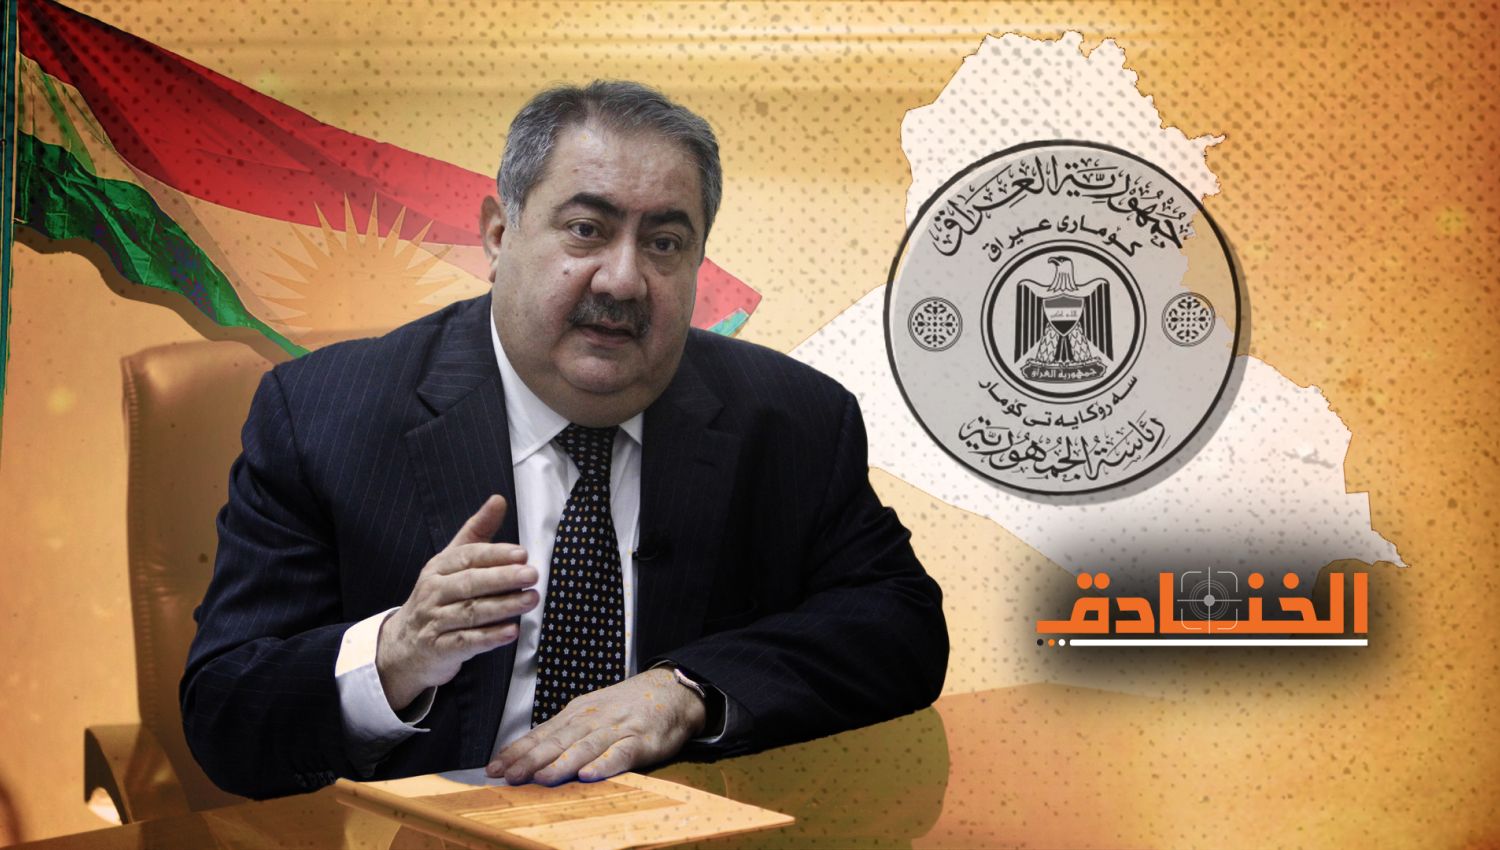 رئاسة الجمهورية العراقية: زيباري أم صالح أم مرشح توافقي؟